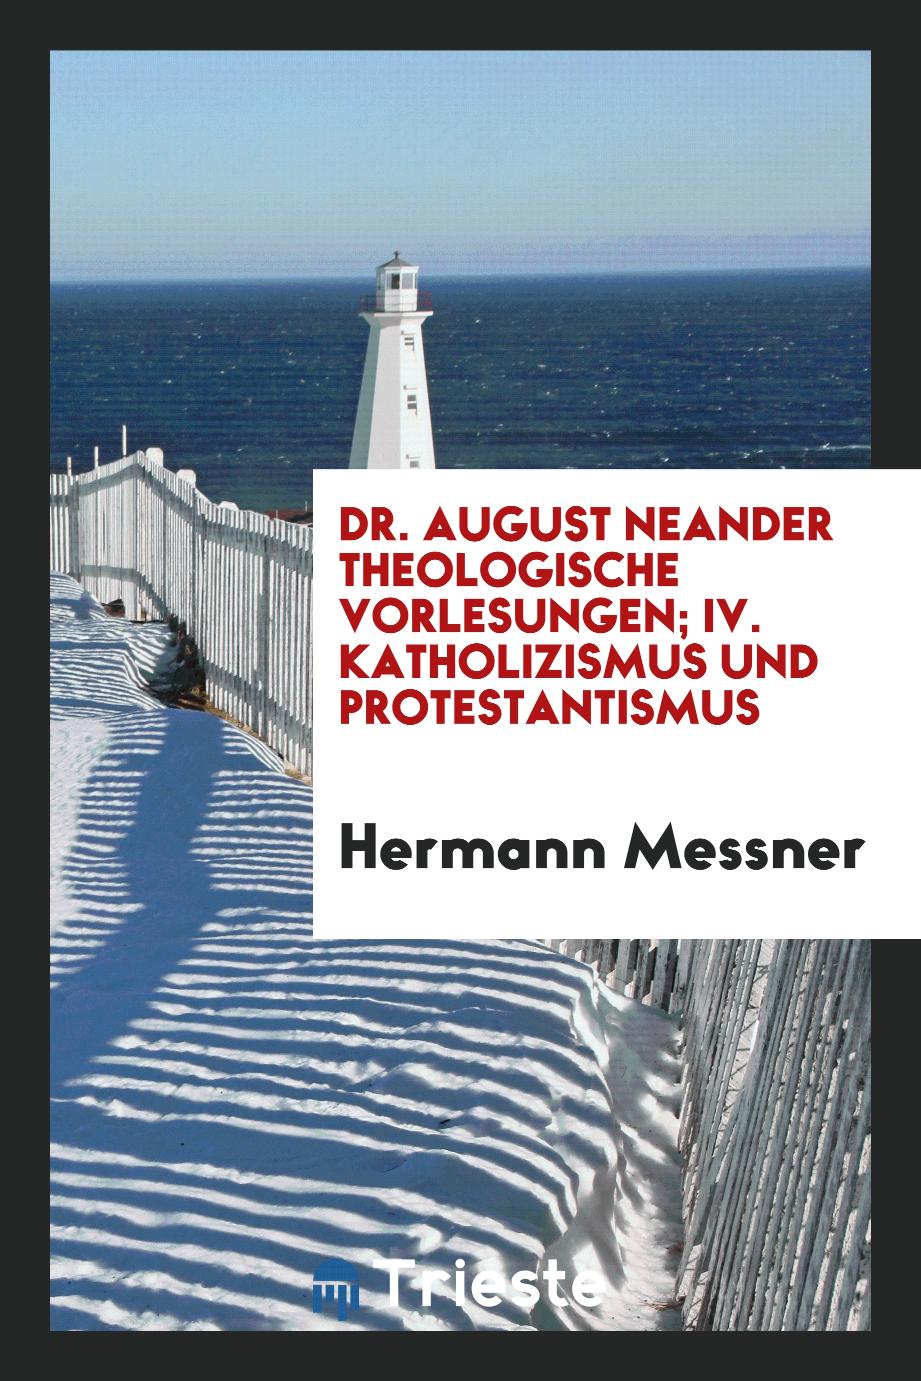 Dr. August Neander theologische vorlesungen; IV. katholizismus und protestantismus